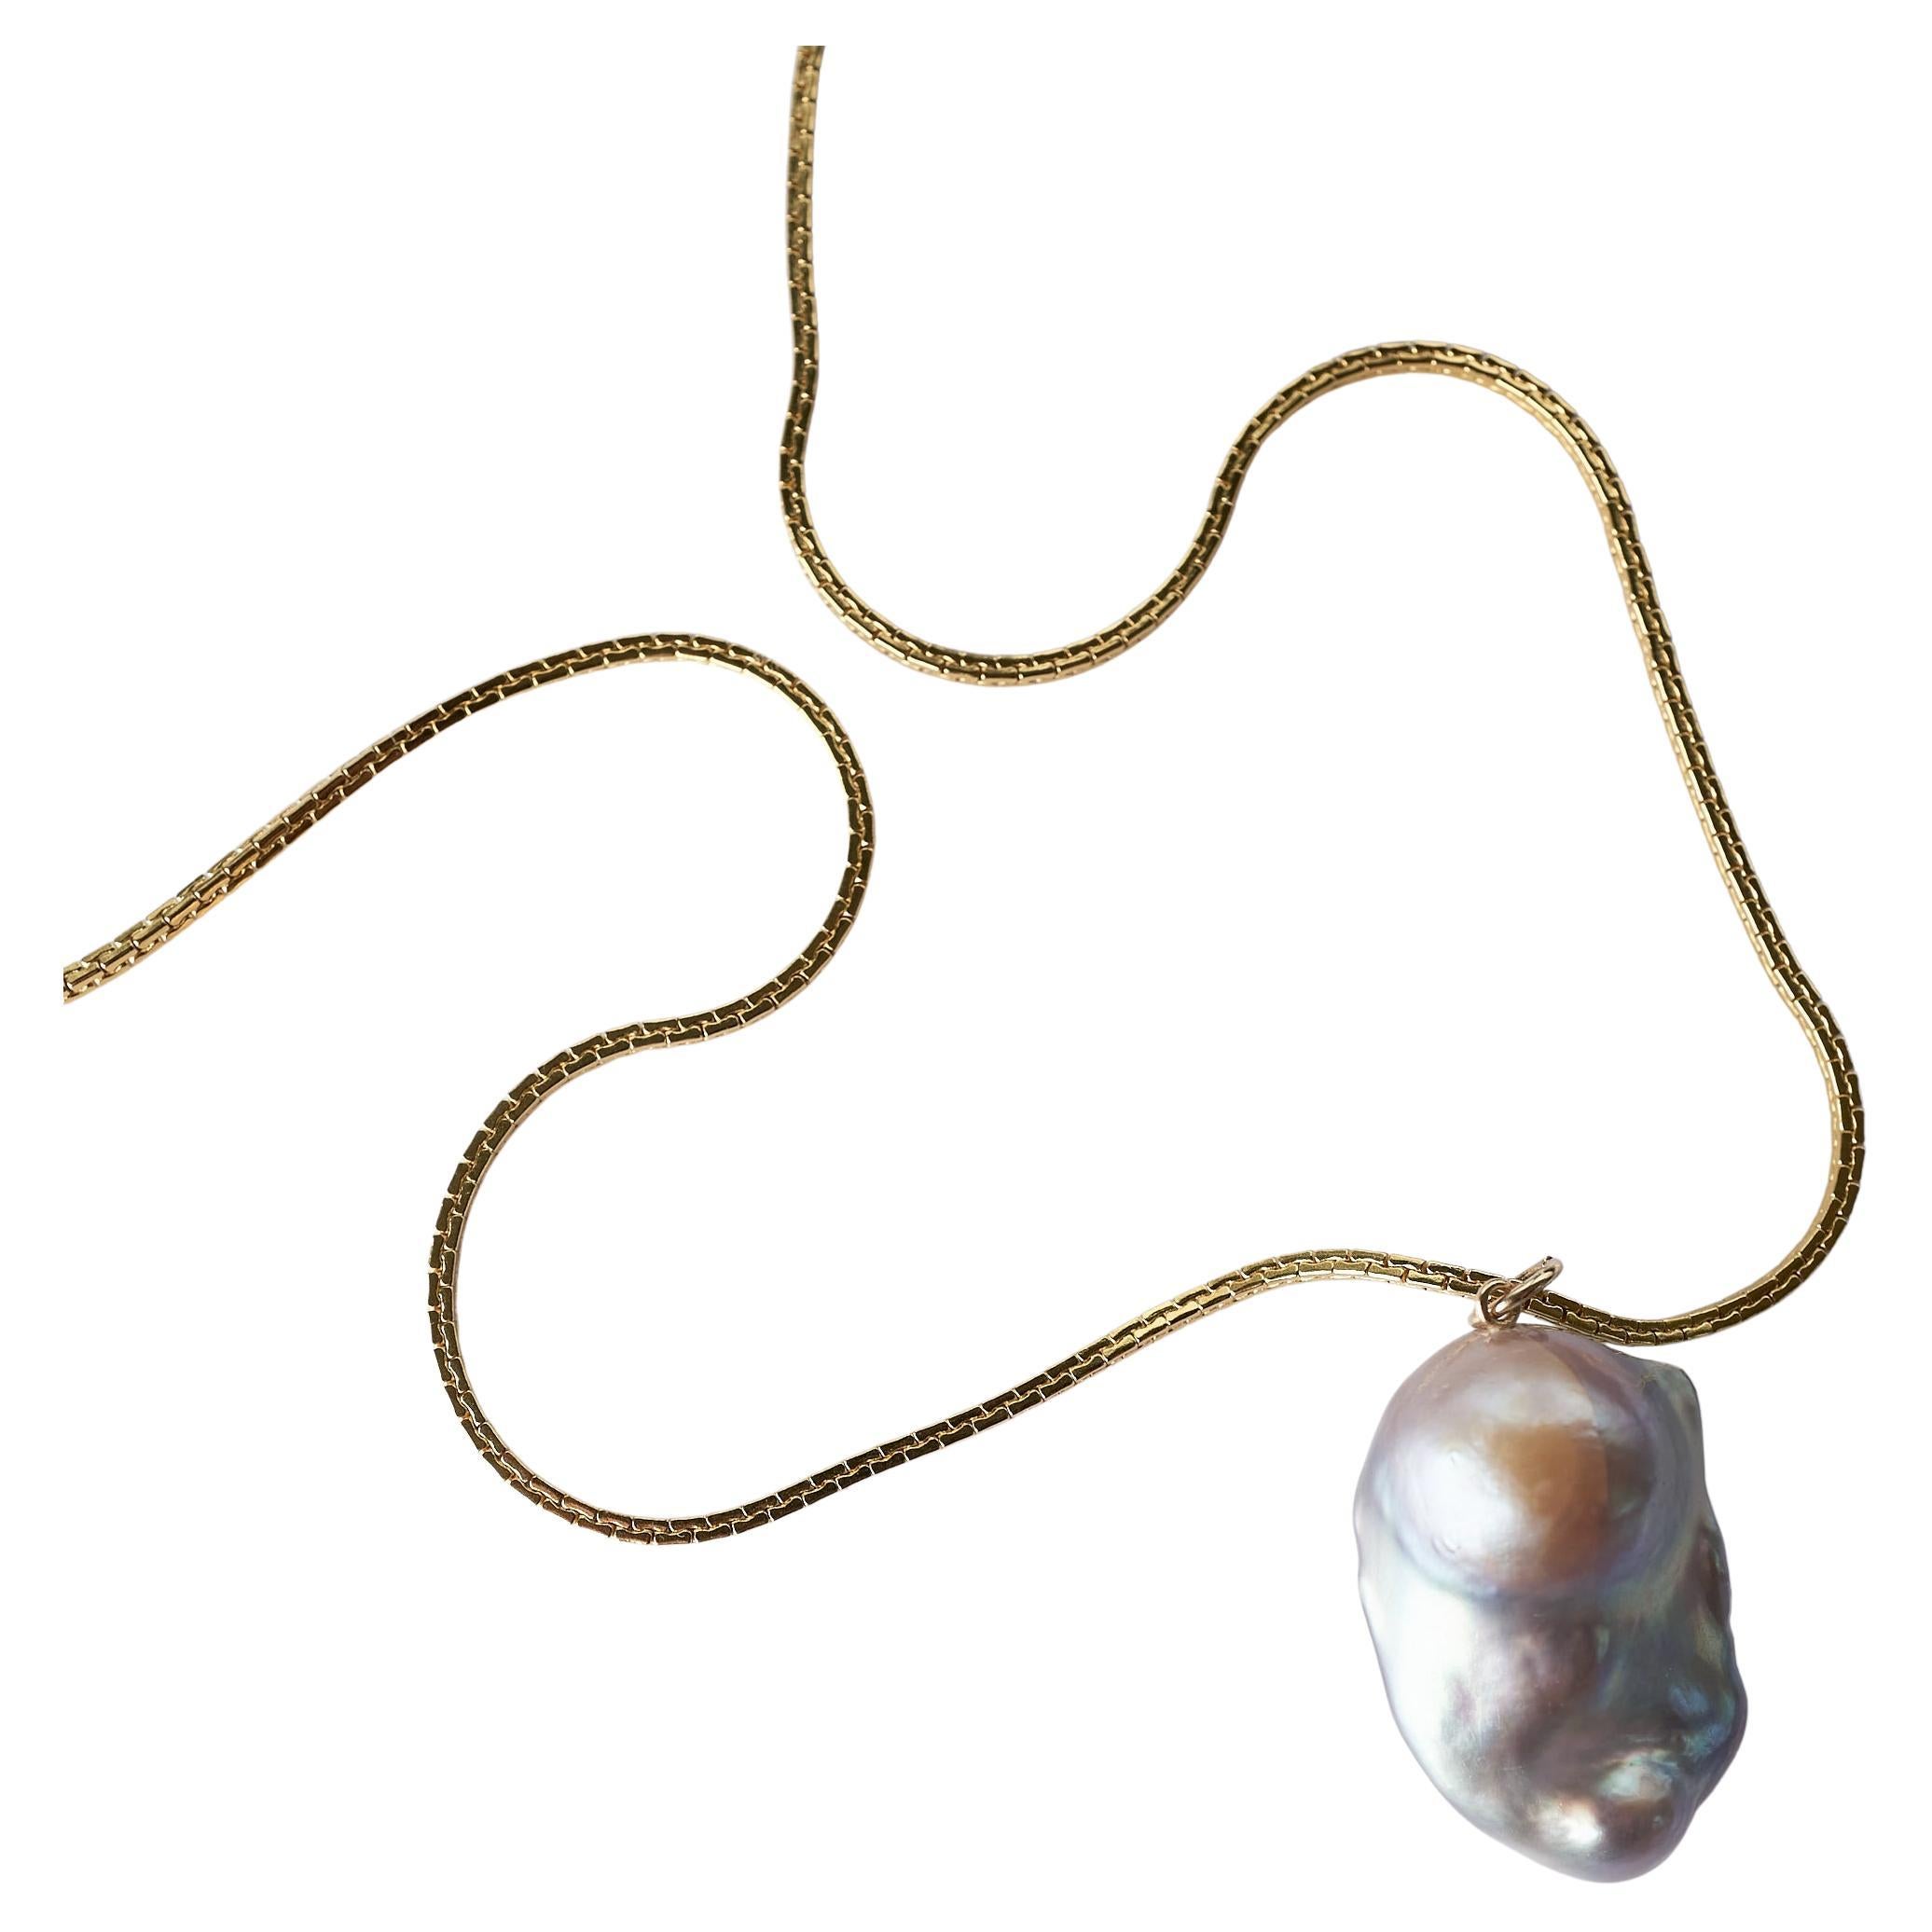 安い 値段 【daniel et lili】deadstock parts necklace メンズ